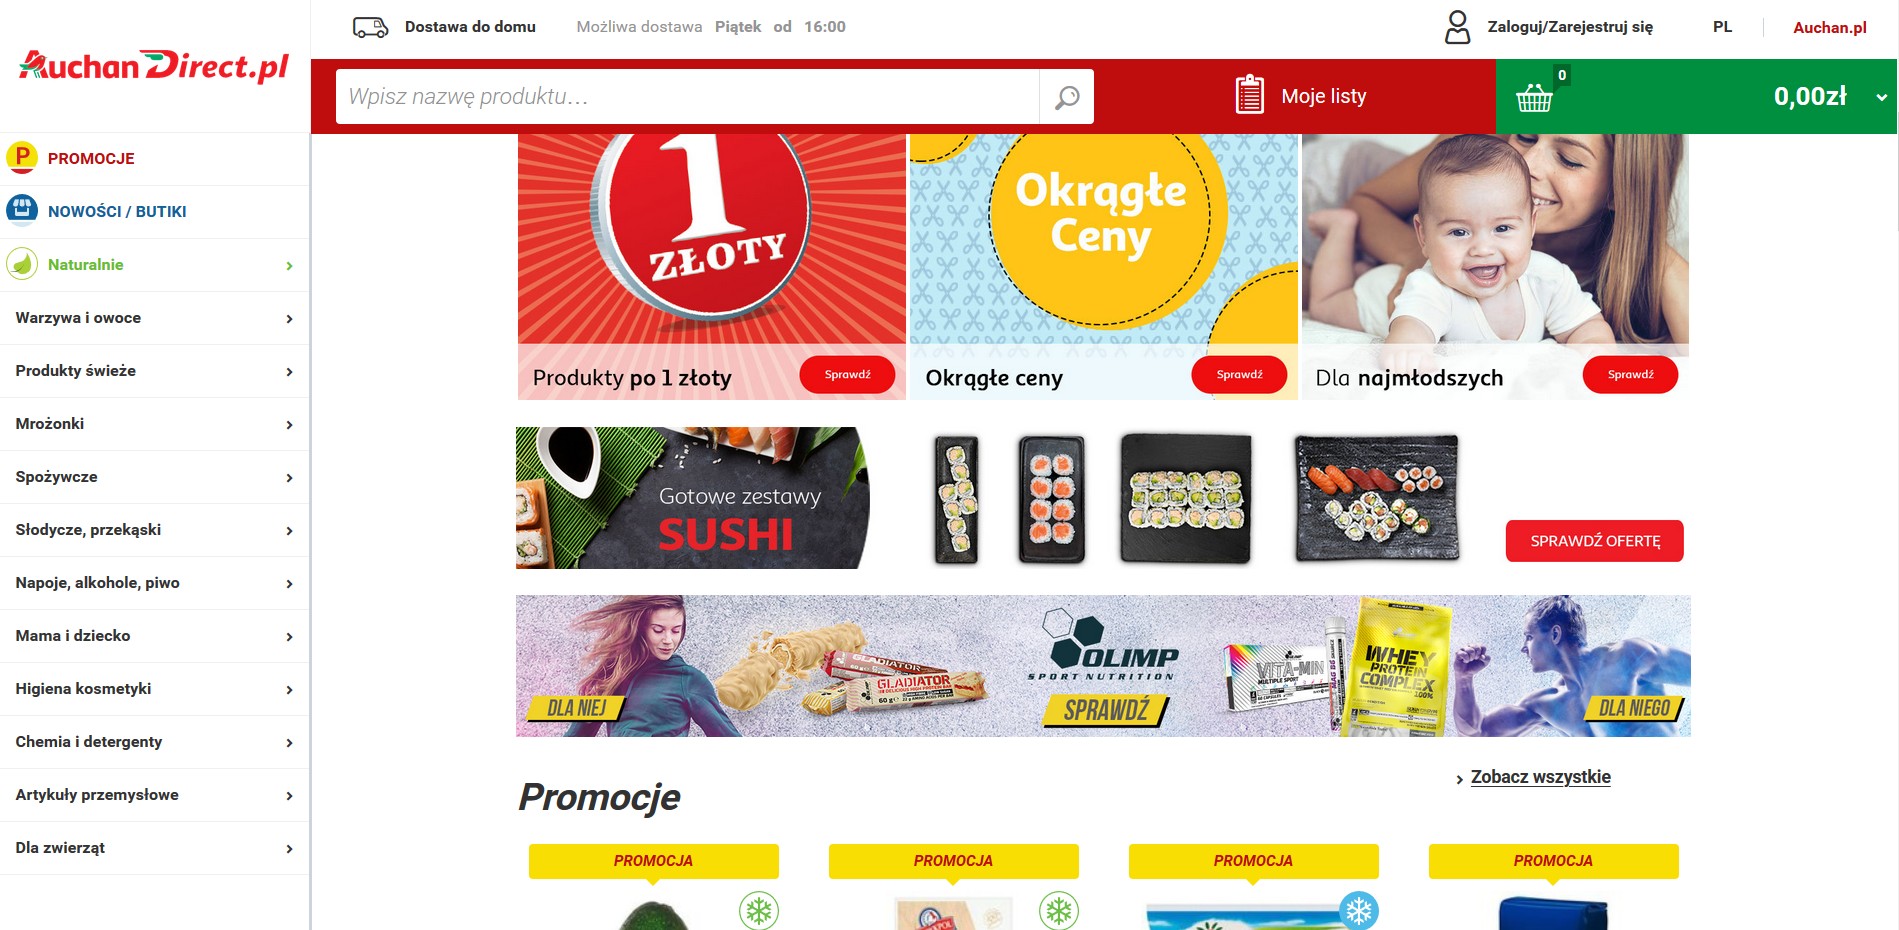 Przedstawiam sklep internetowy Auchan Direct